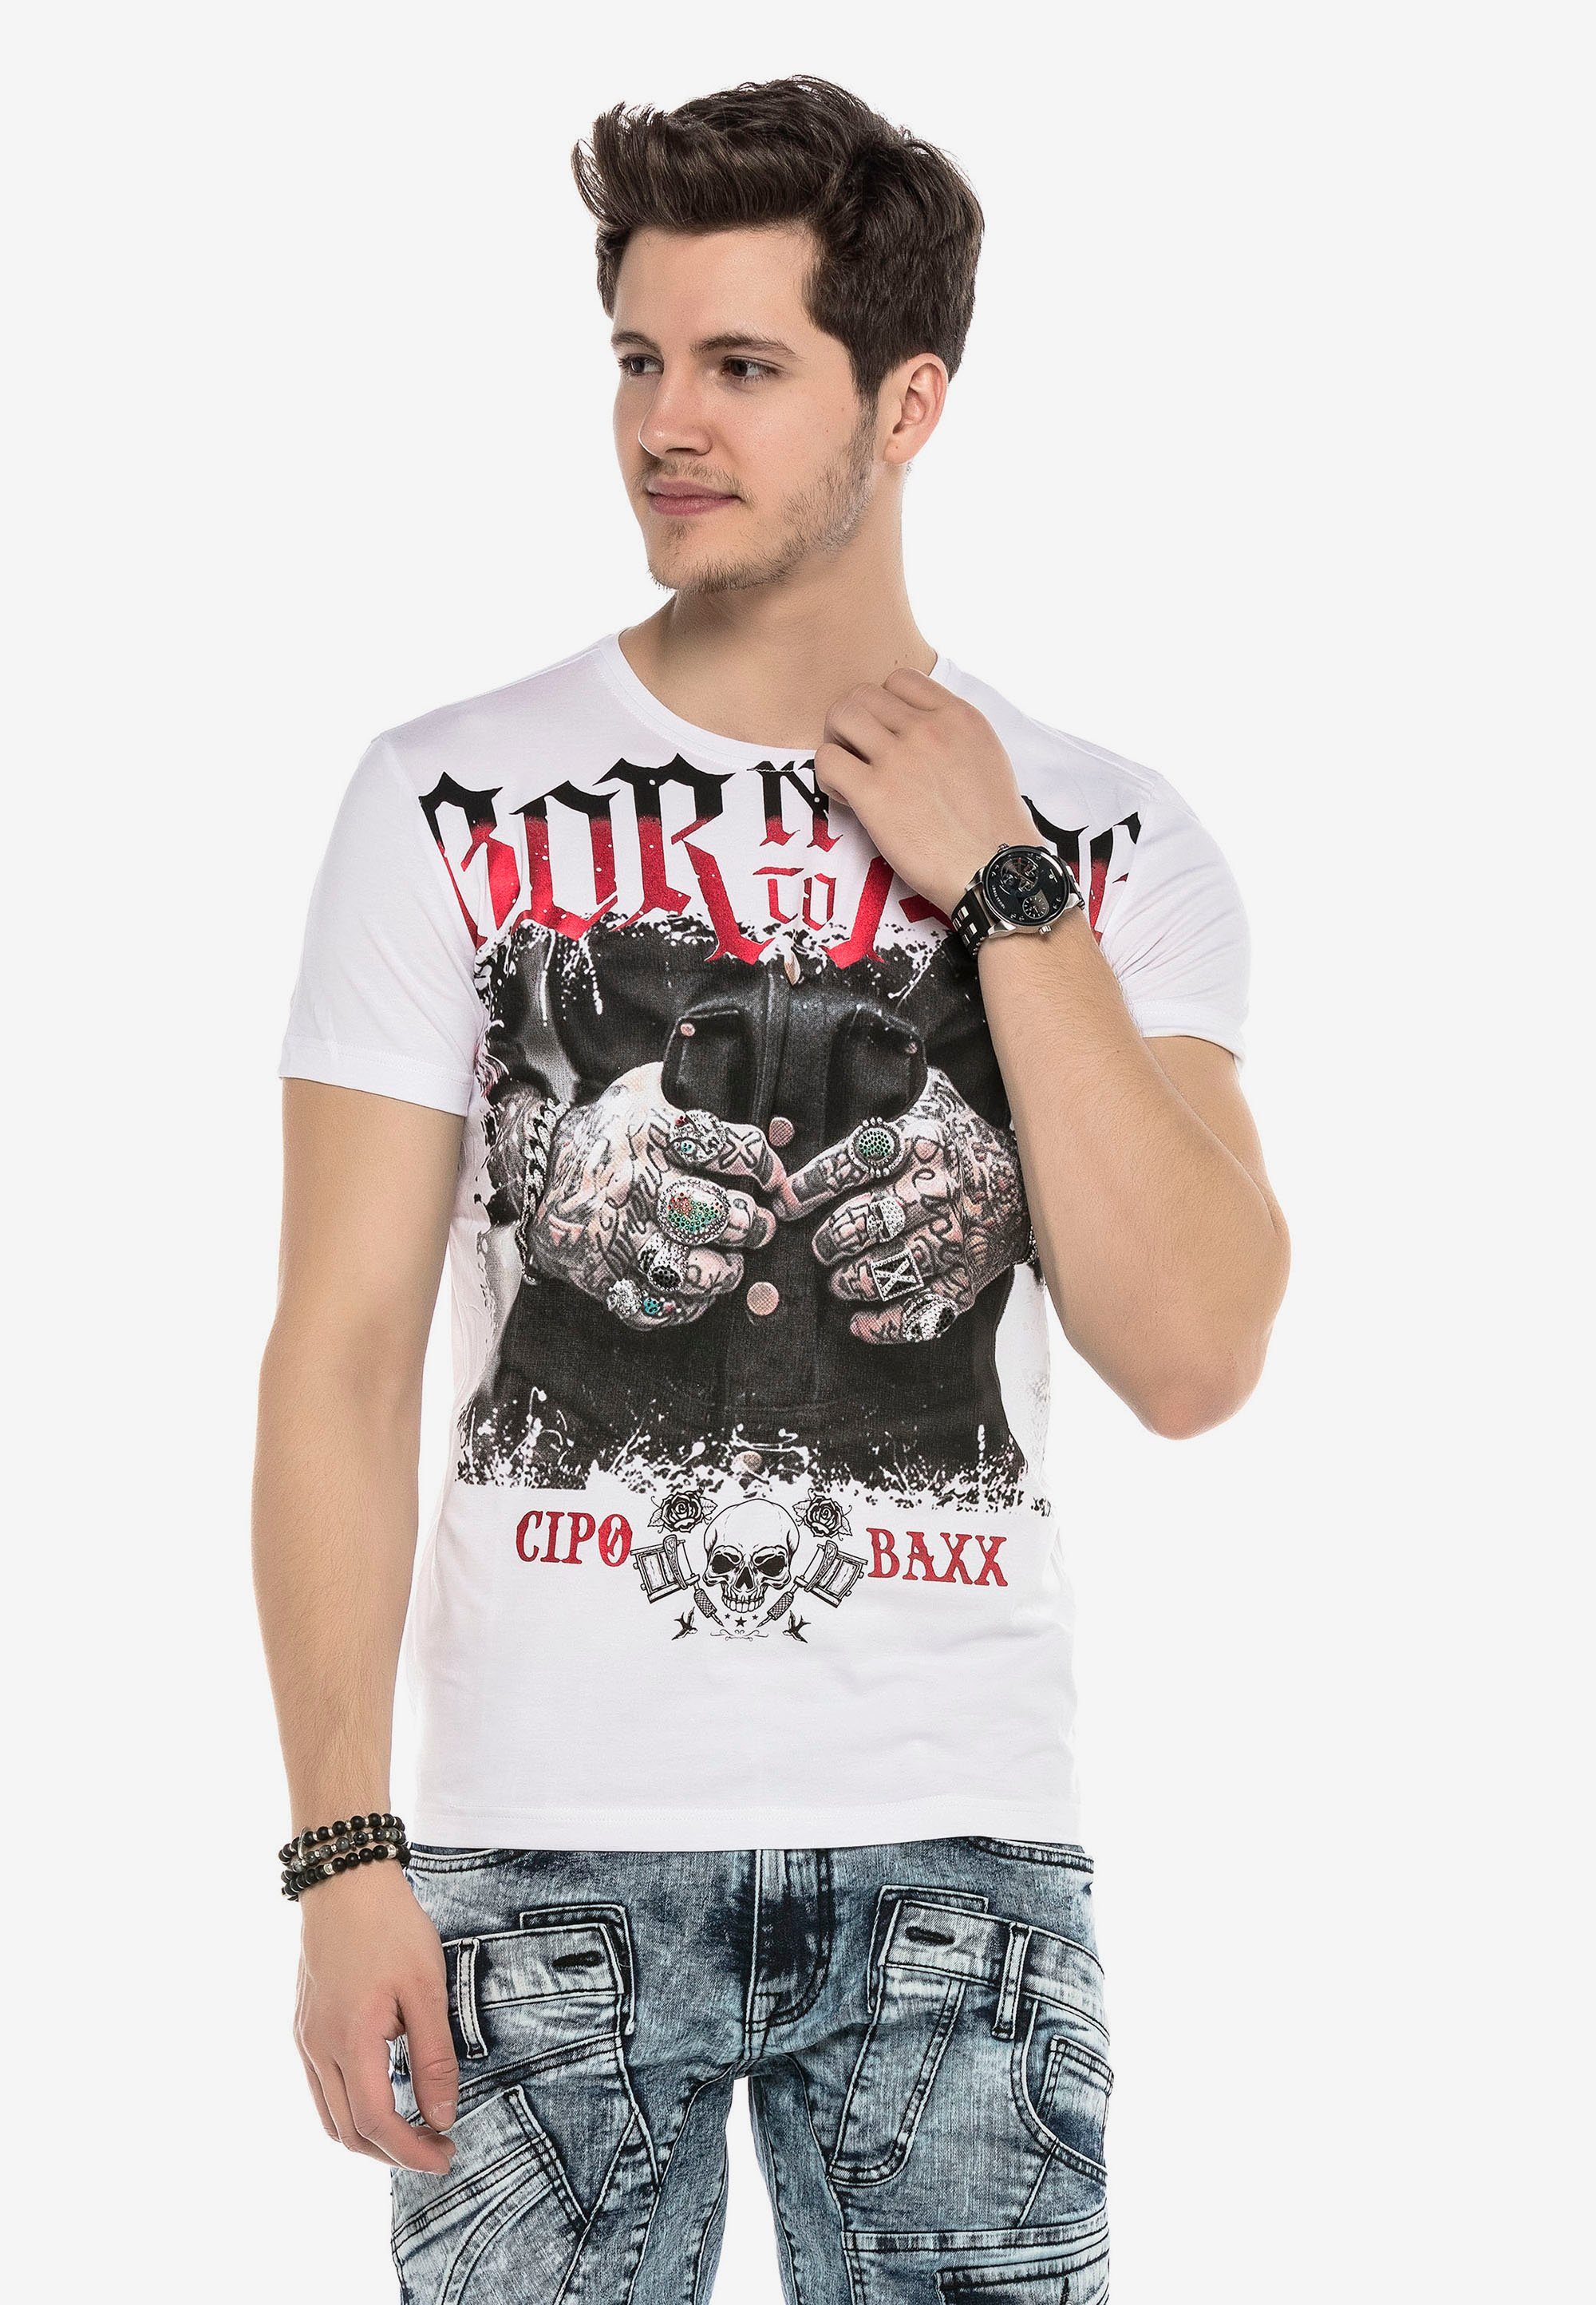 & Cipo T-Shirt Grafikprint Baxx stylischem mit weiß